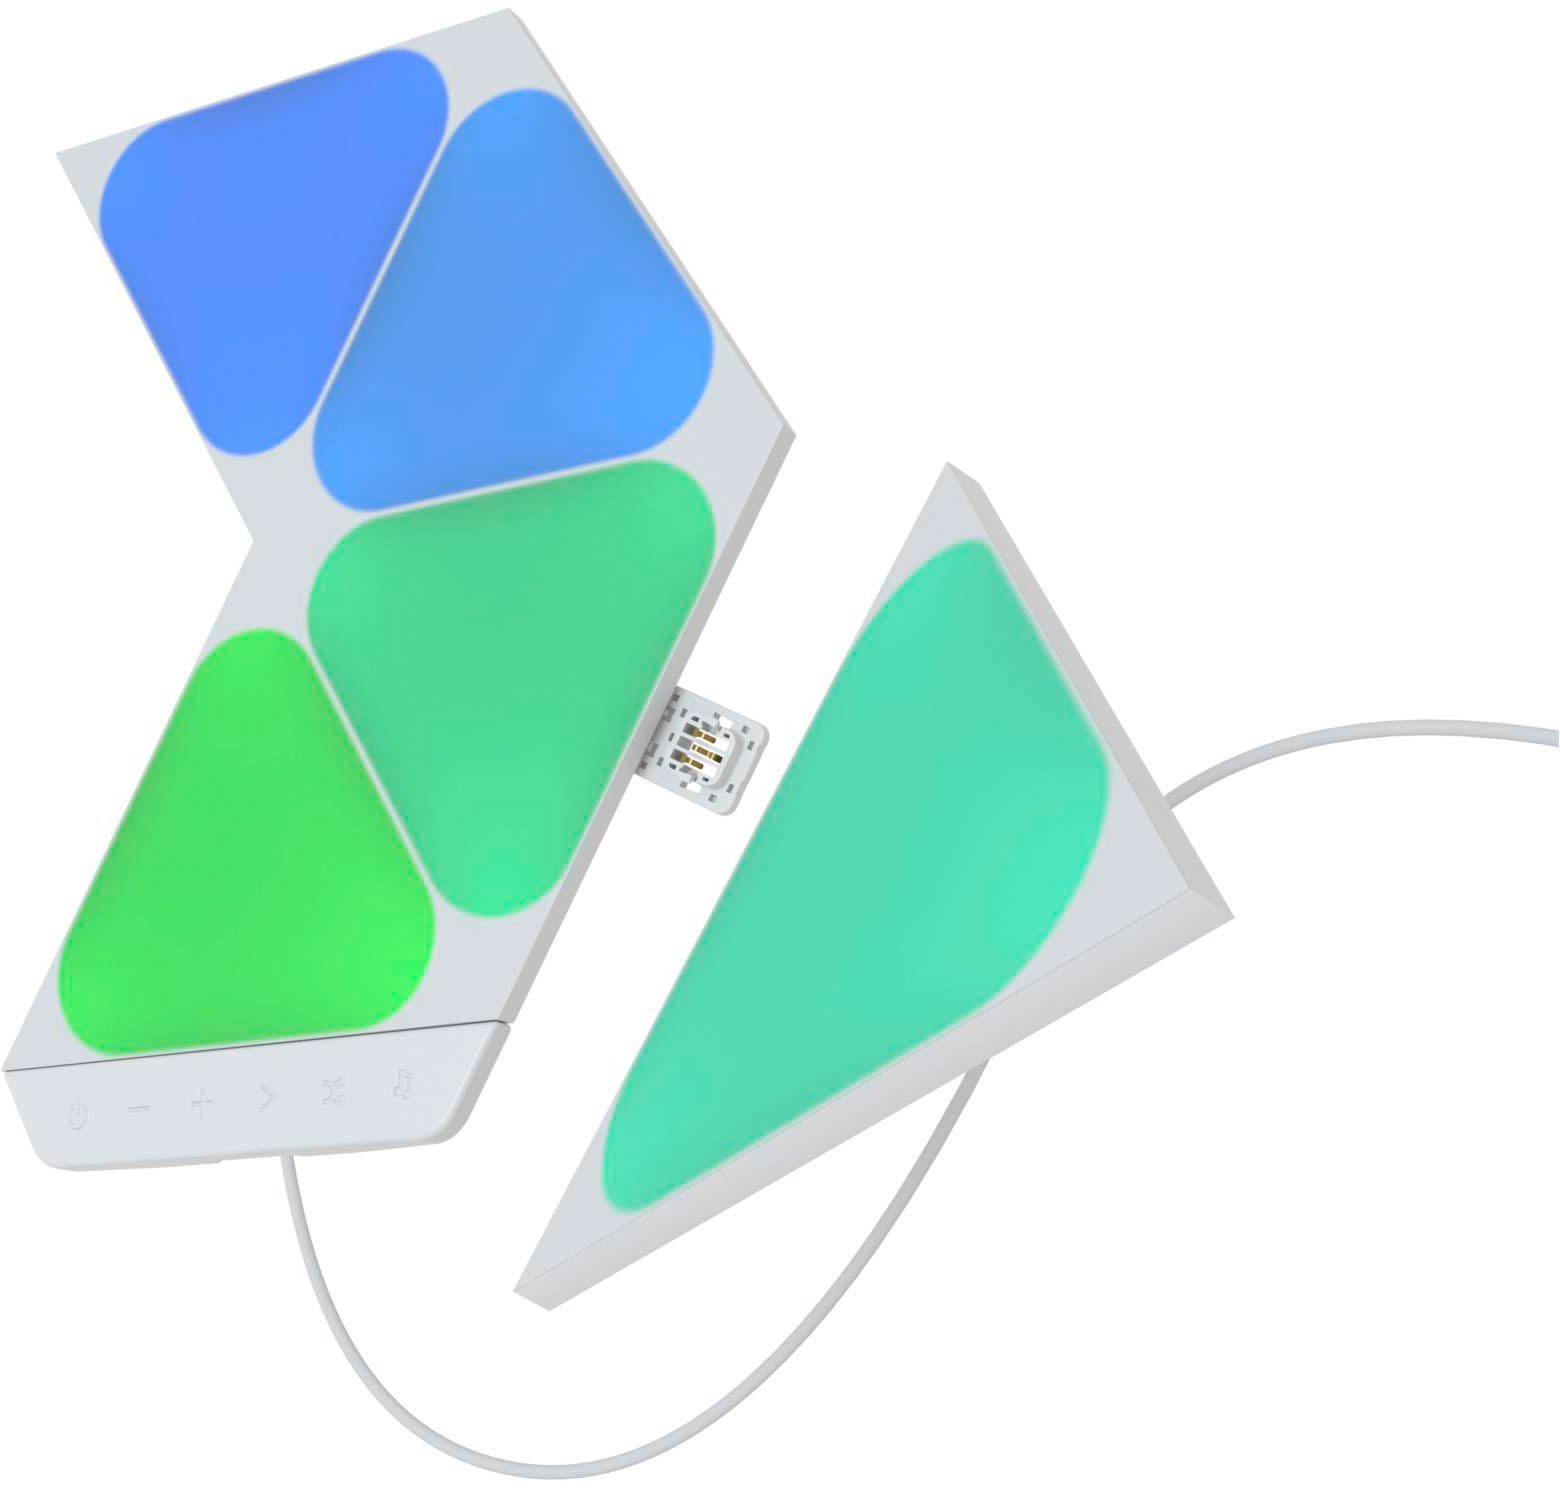 fest Panel Triangles LED Shapes integriert, nanoleaf LED Farbwechsler Mini, Dimmfunktion,